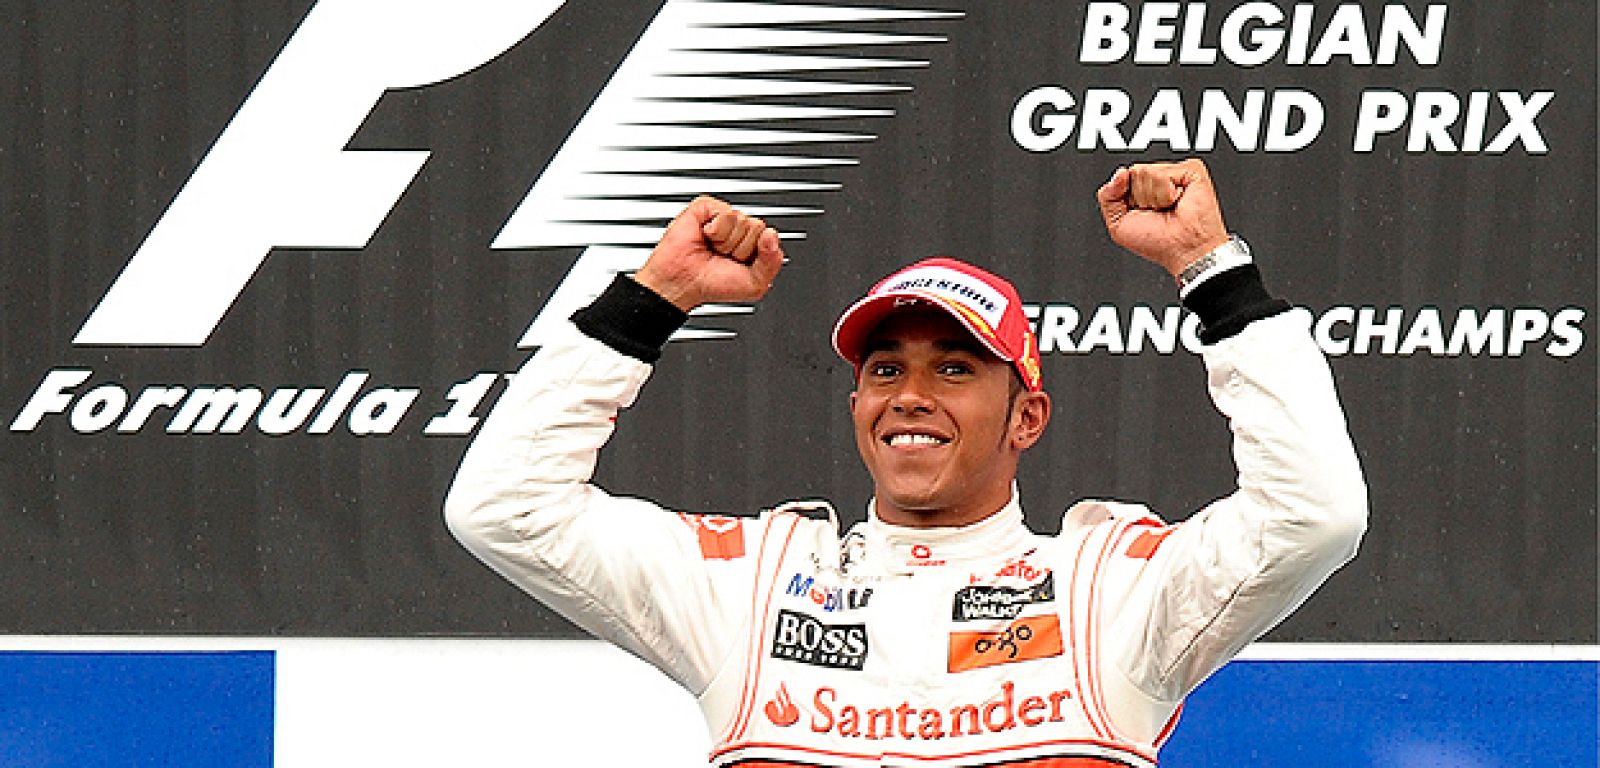 El británico Lewis Hamilton celebra tras adjudicarse la victoria en el Gran Premio de Bélgica, por delante del australiano Mark Webber, mientras que Fernando Alonso ha abandonado por accidente a siete vueltas del final.